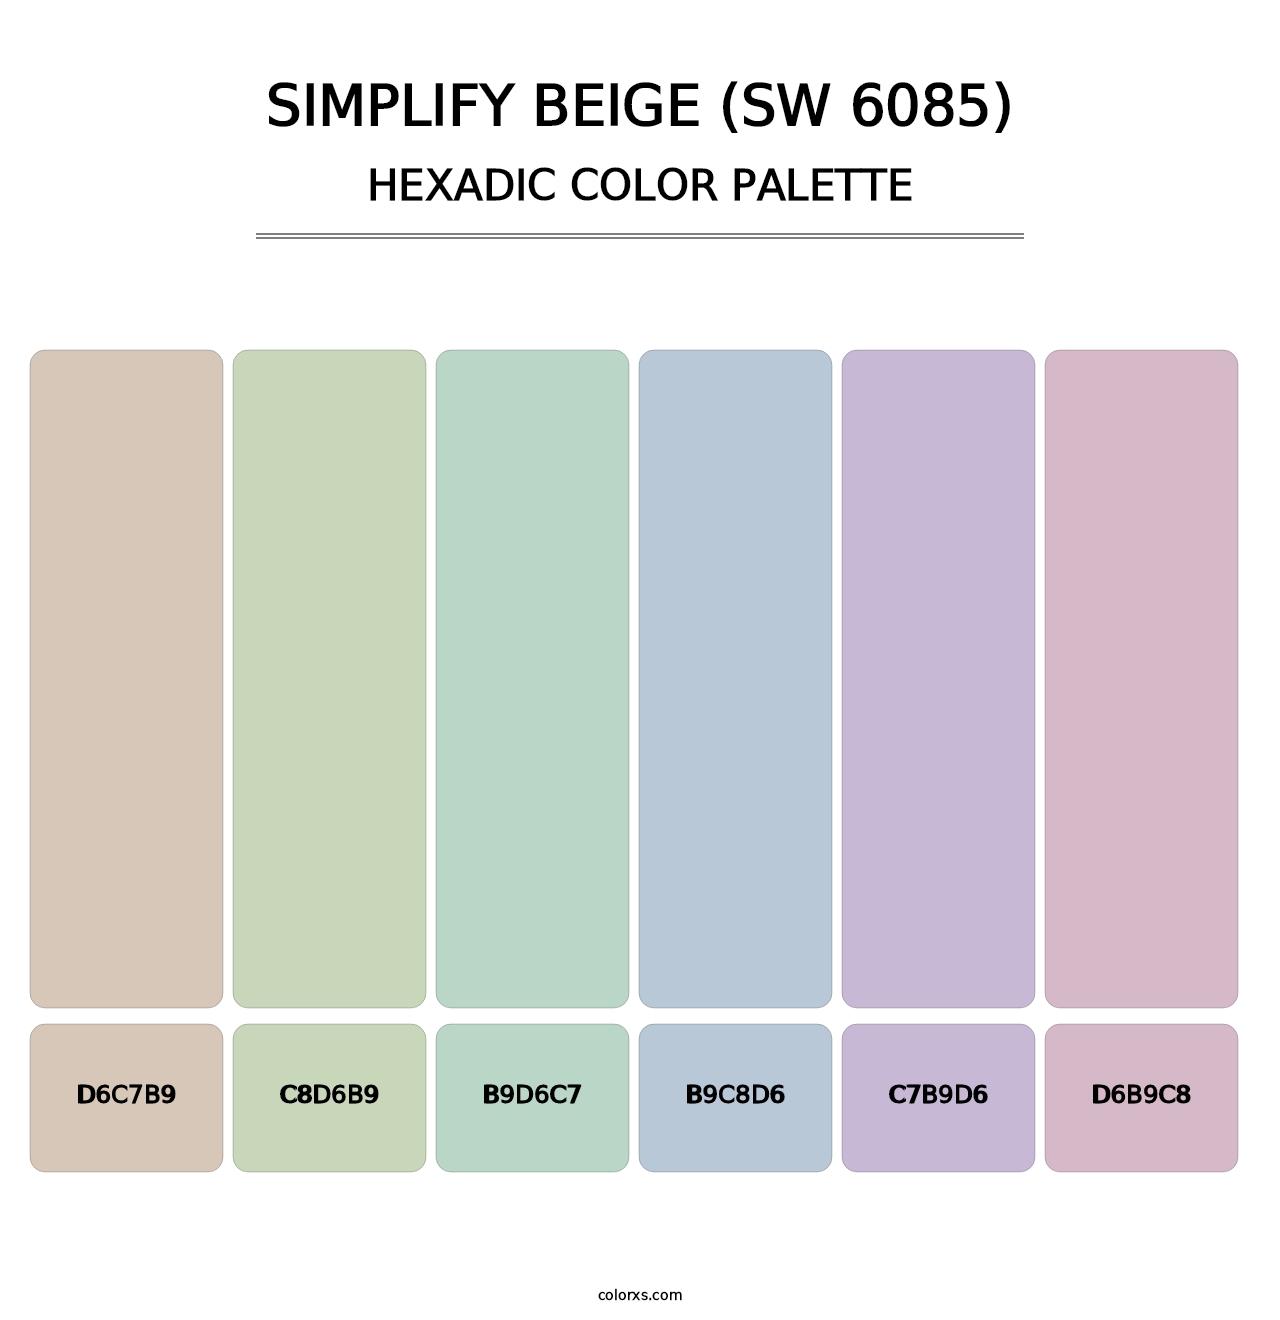 Simplify Beige (SW 6085) - Hexadic Color Palette